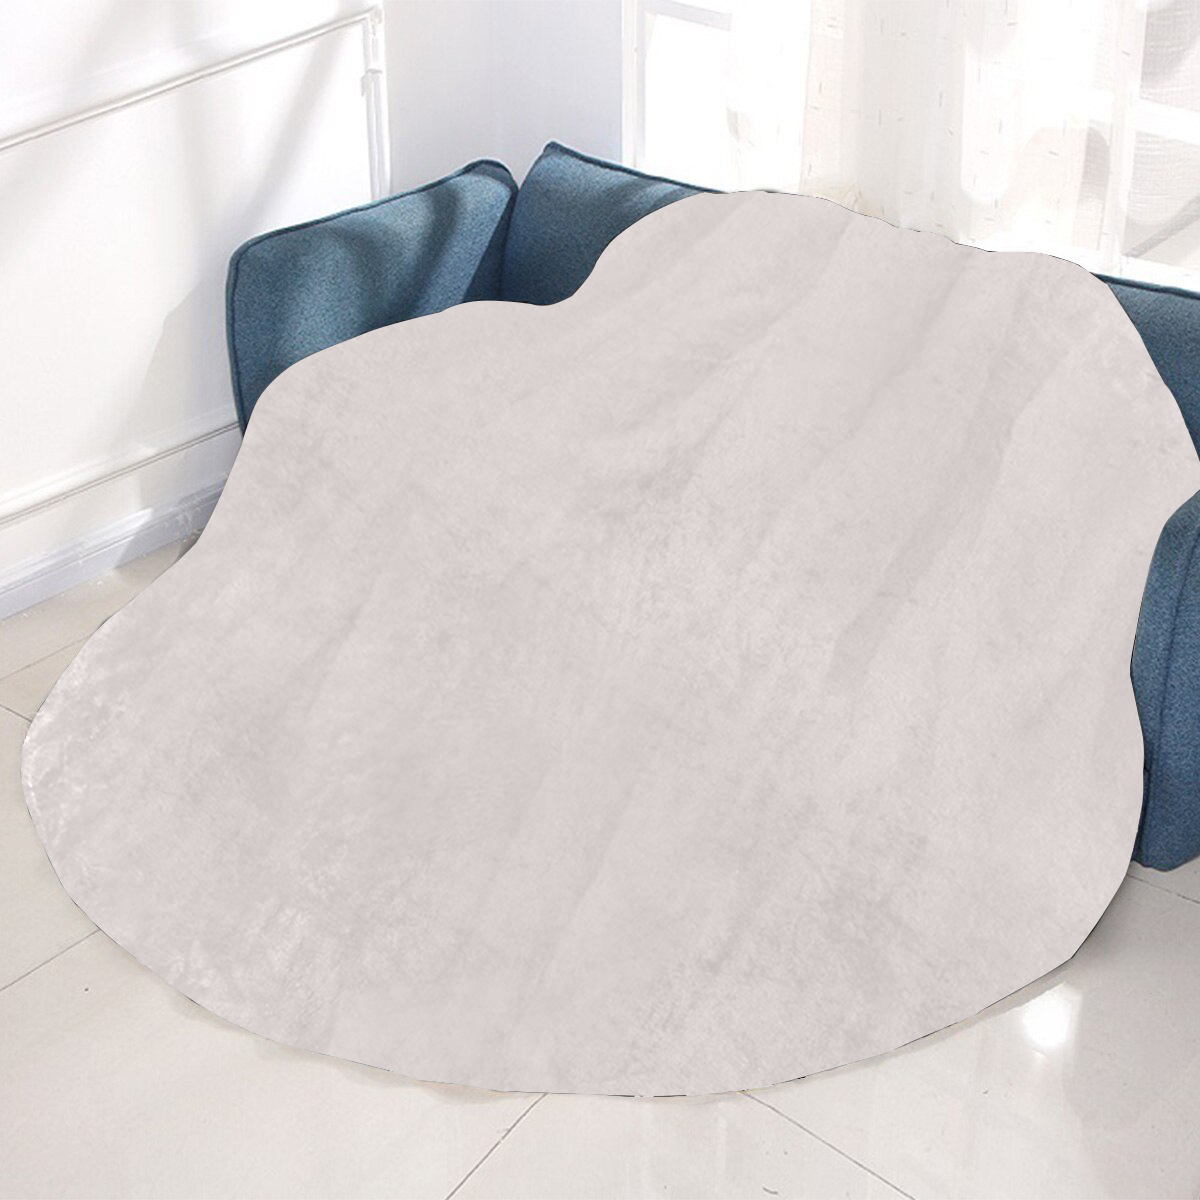 Circular Ultra-Soft Micro Fleece Blanket 60"